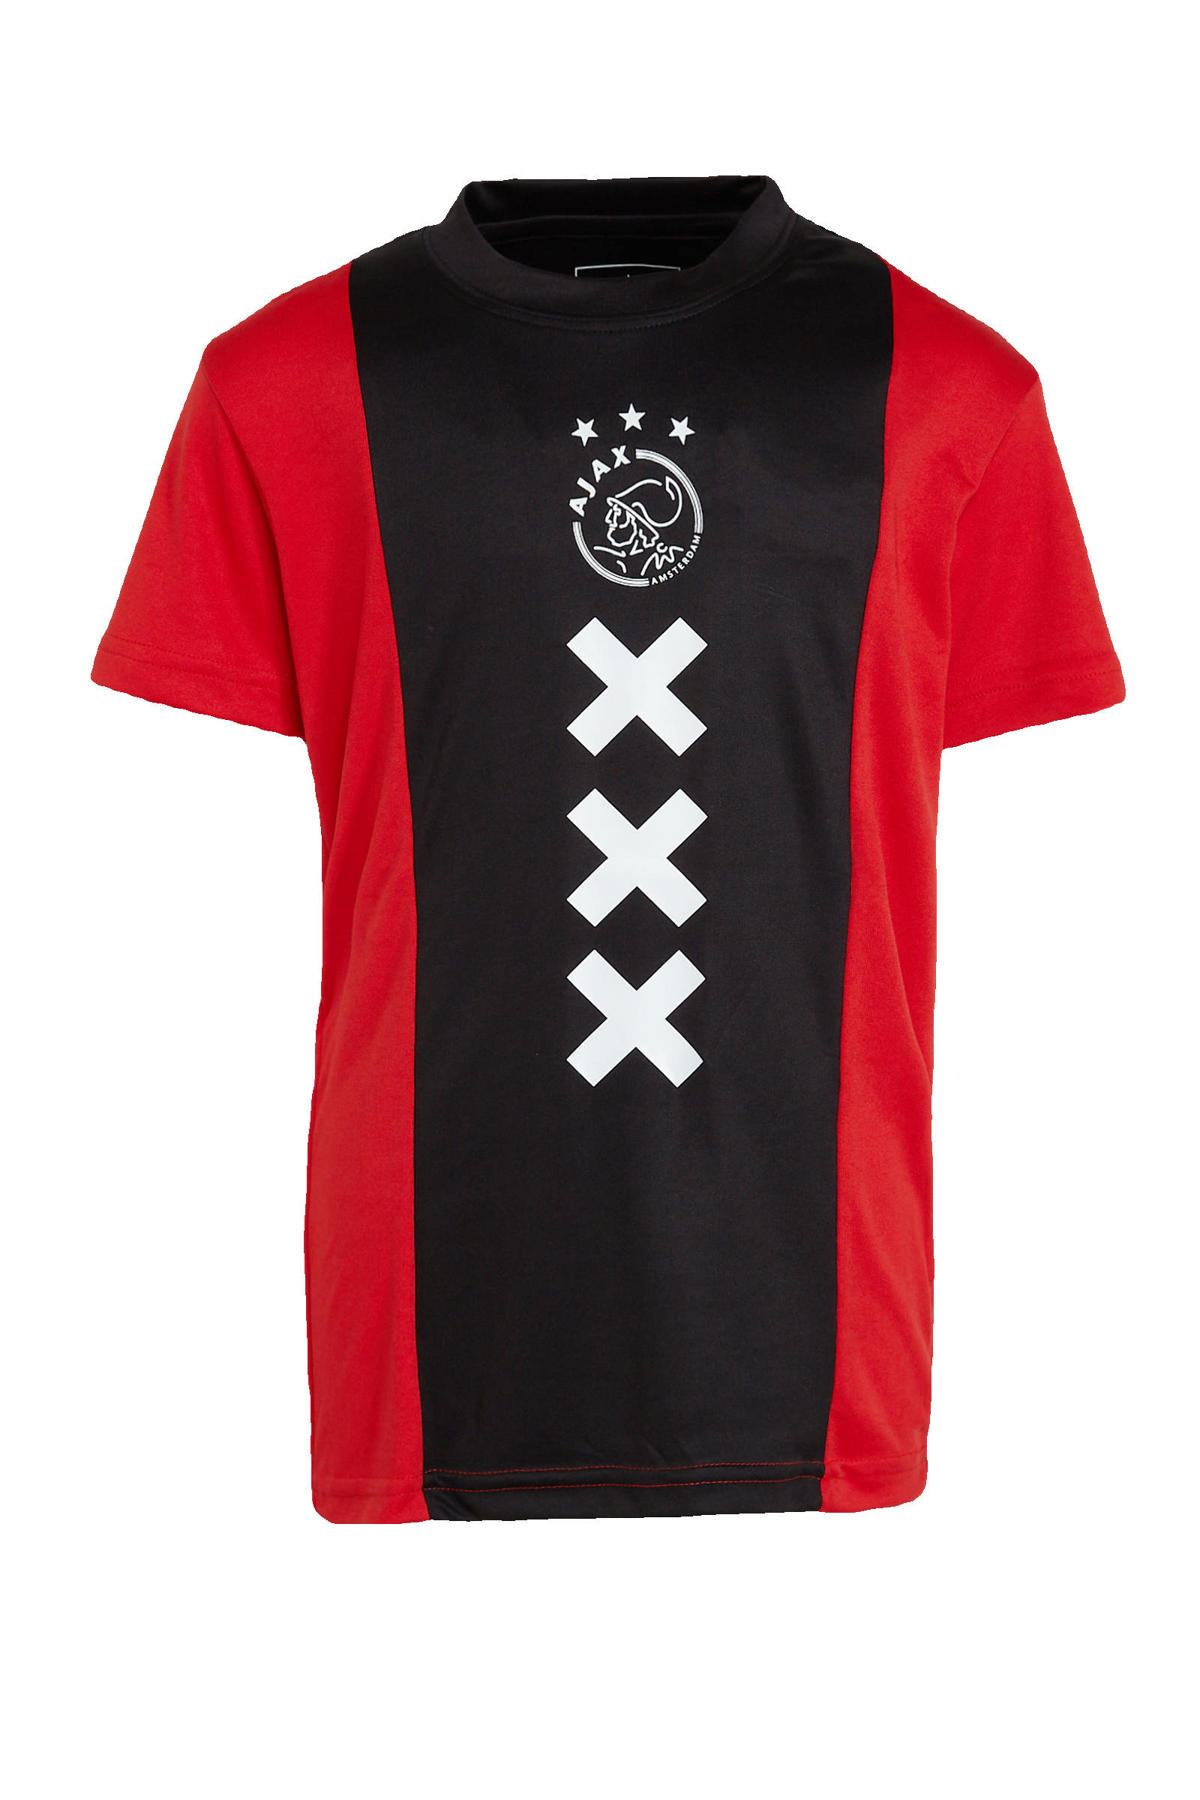 Actie Manuscript Openbaren Ajax Ajax T-shirt met printopdruk rood/zwart | wehkamp